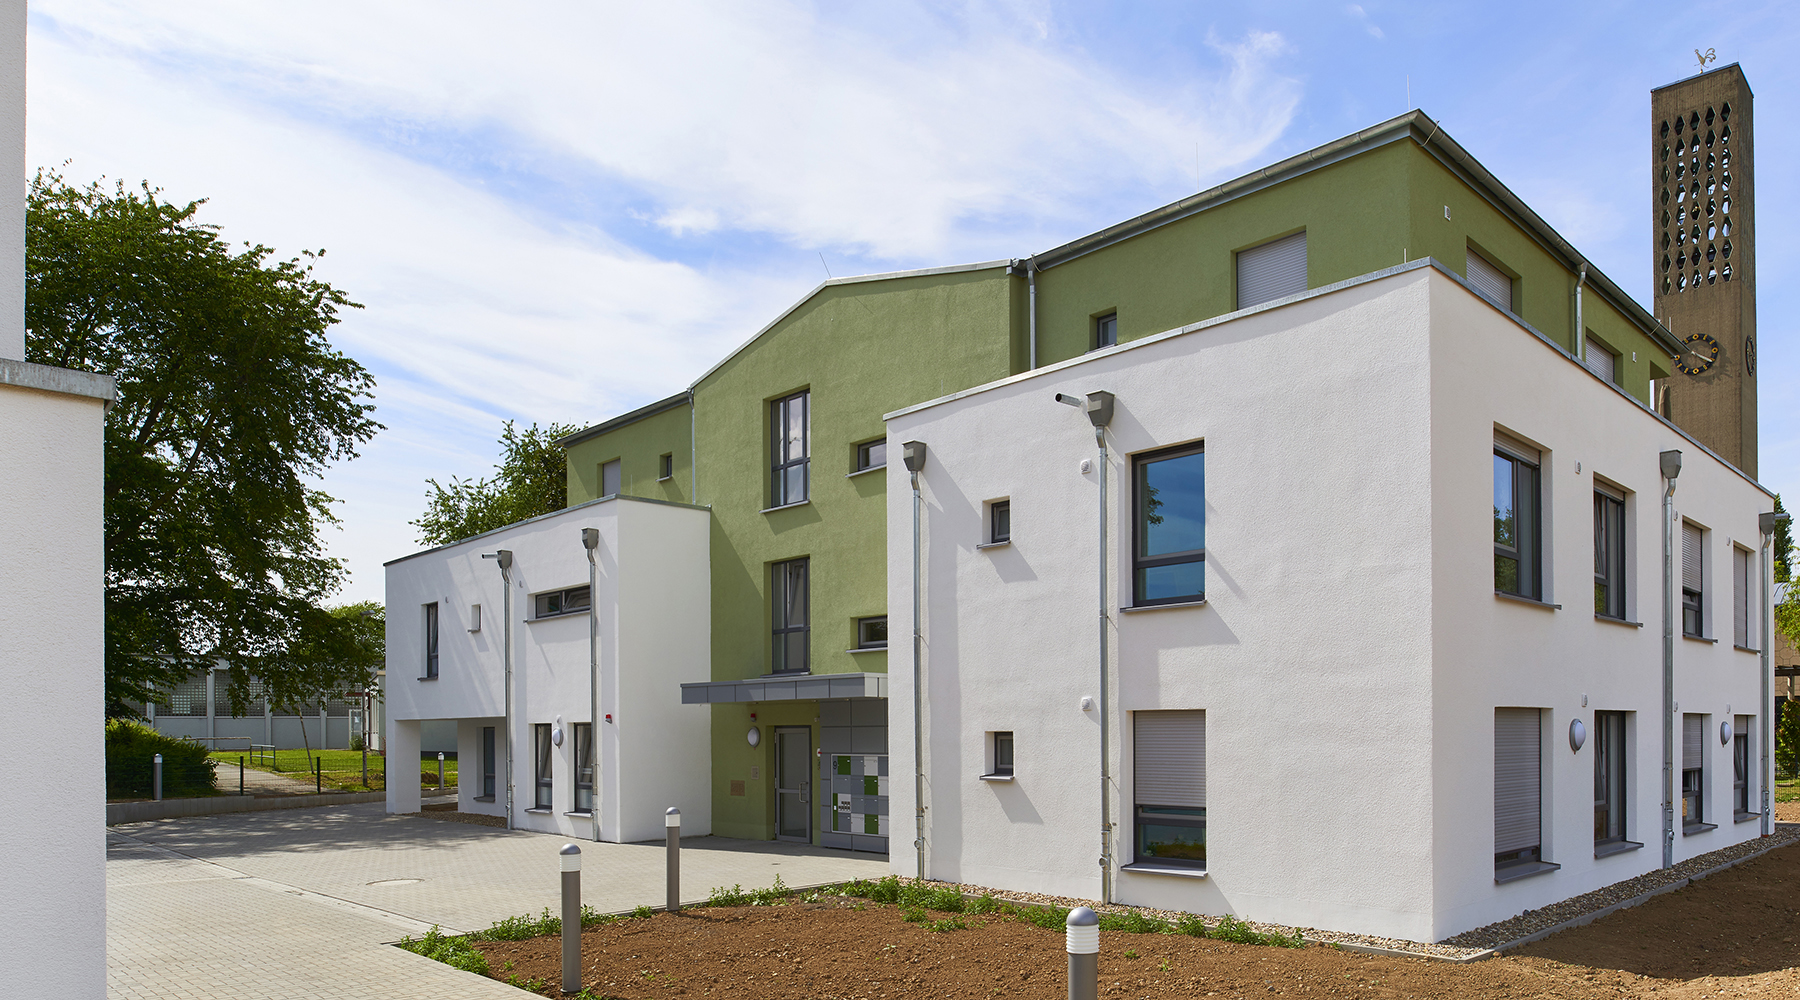 Das Gebäude ist in drei Elemente unterteilt, wobei die Seitenflügel weiß und die Mitte grün sind.